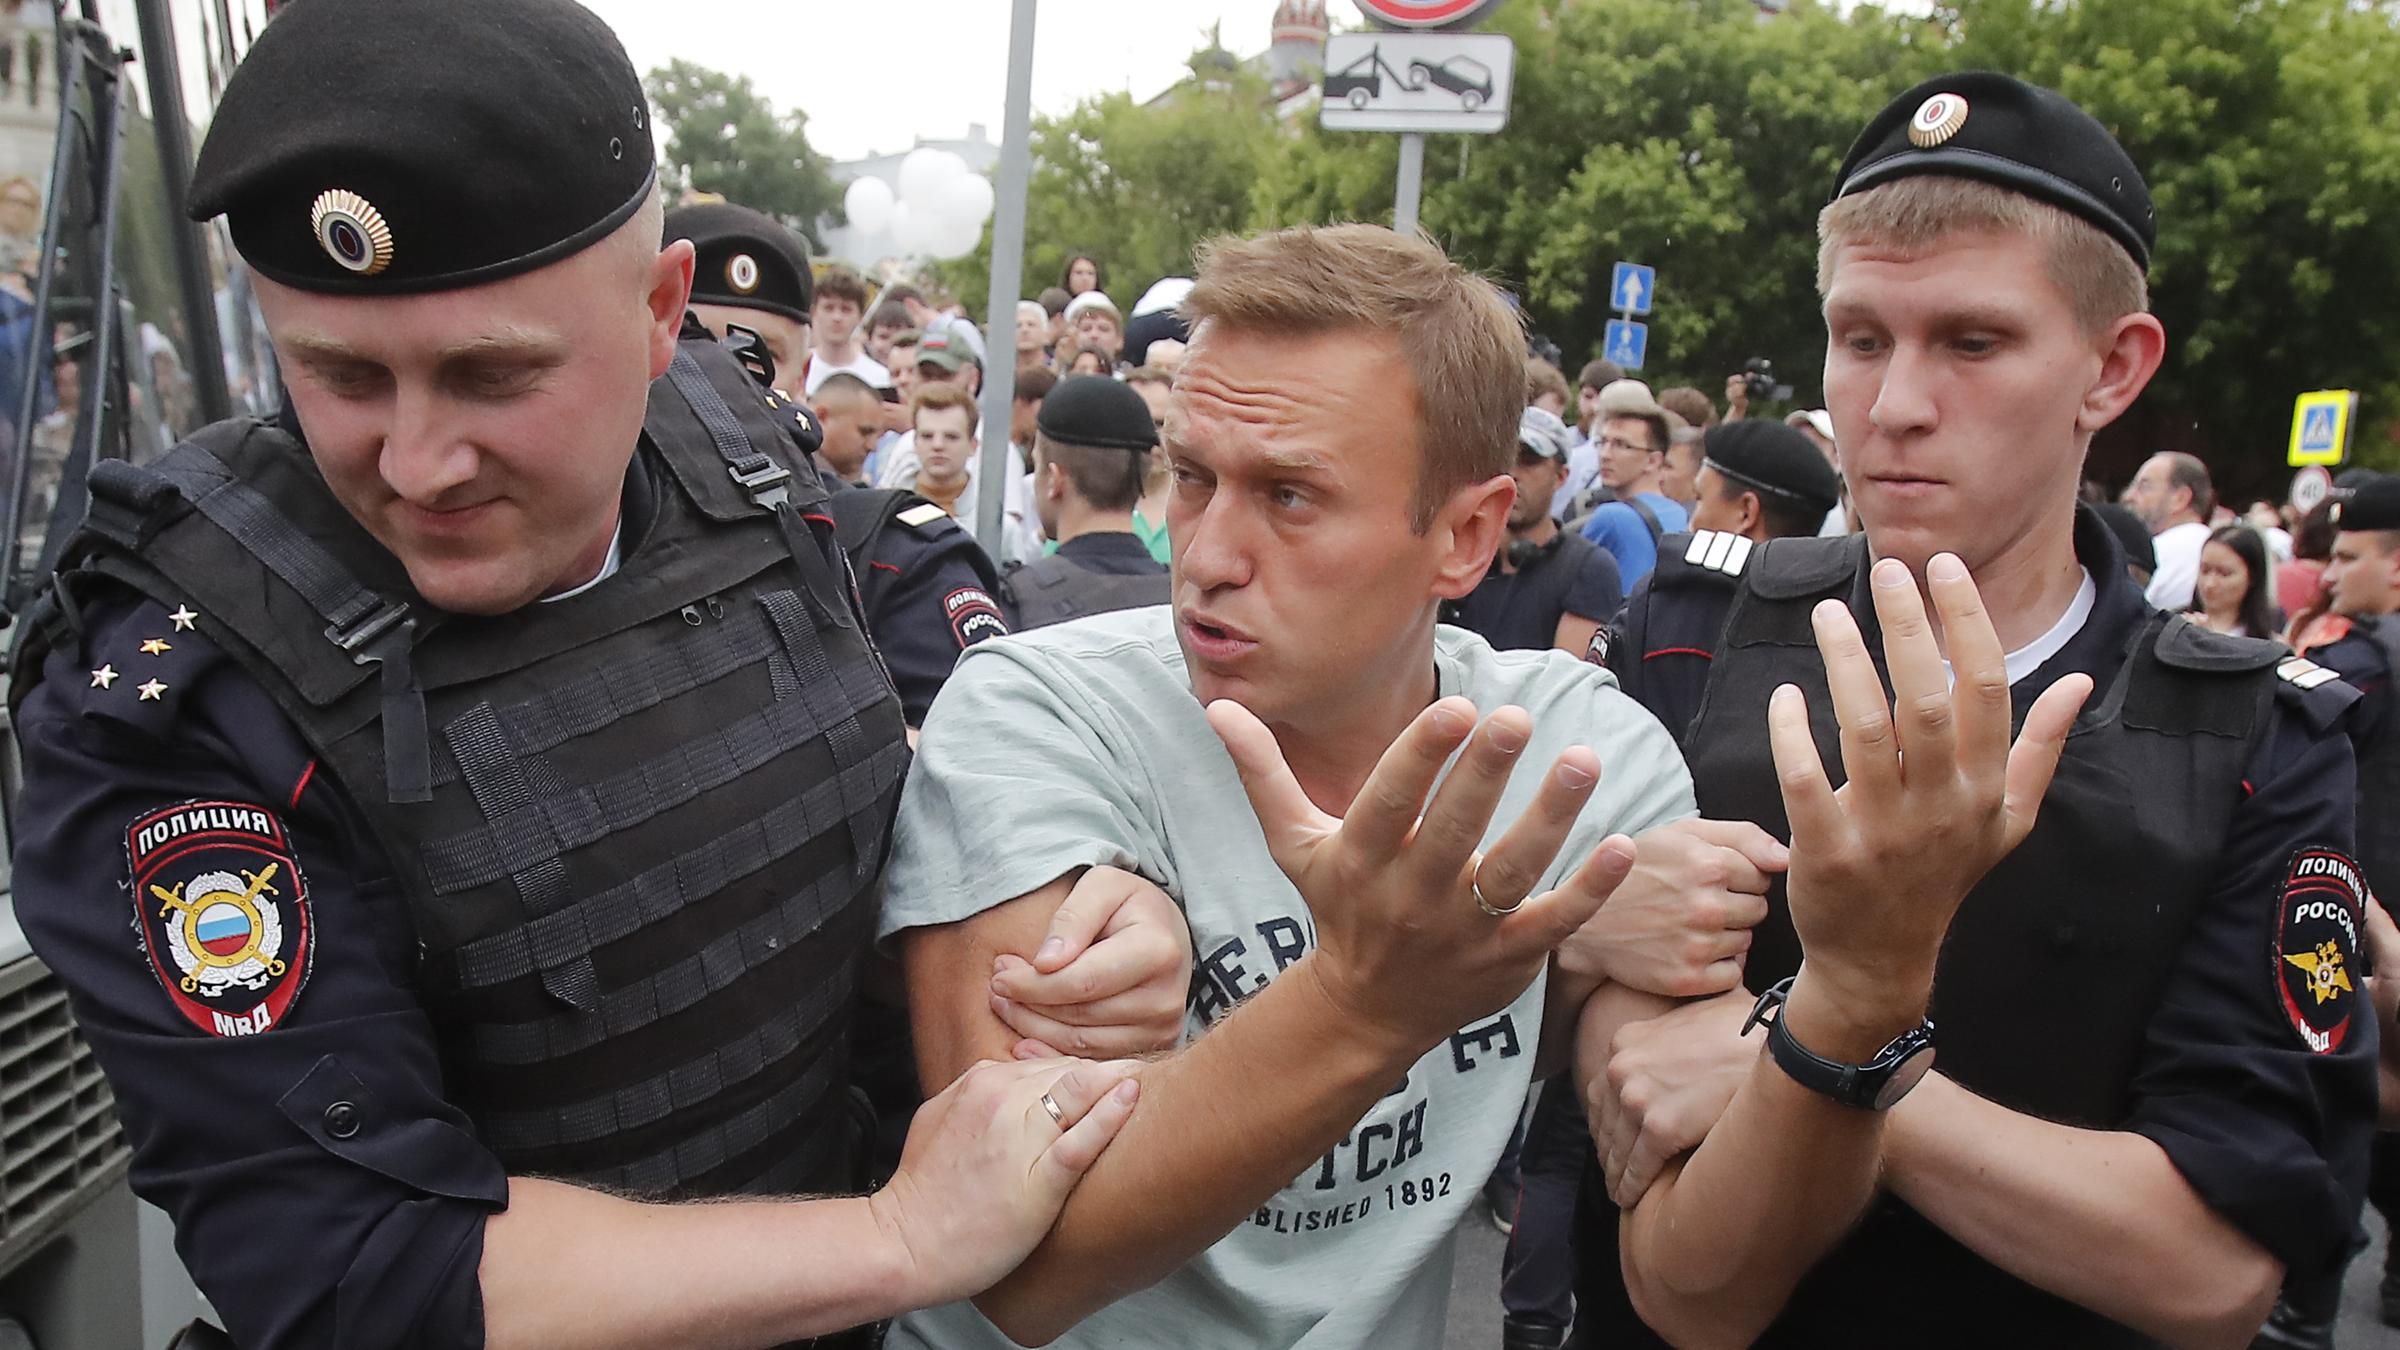 Акция навального полдень